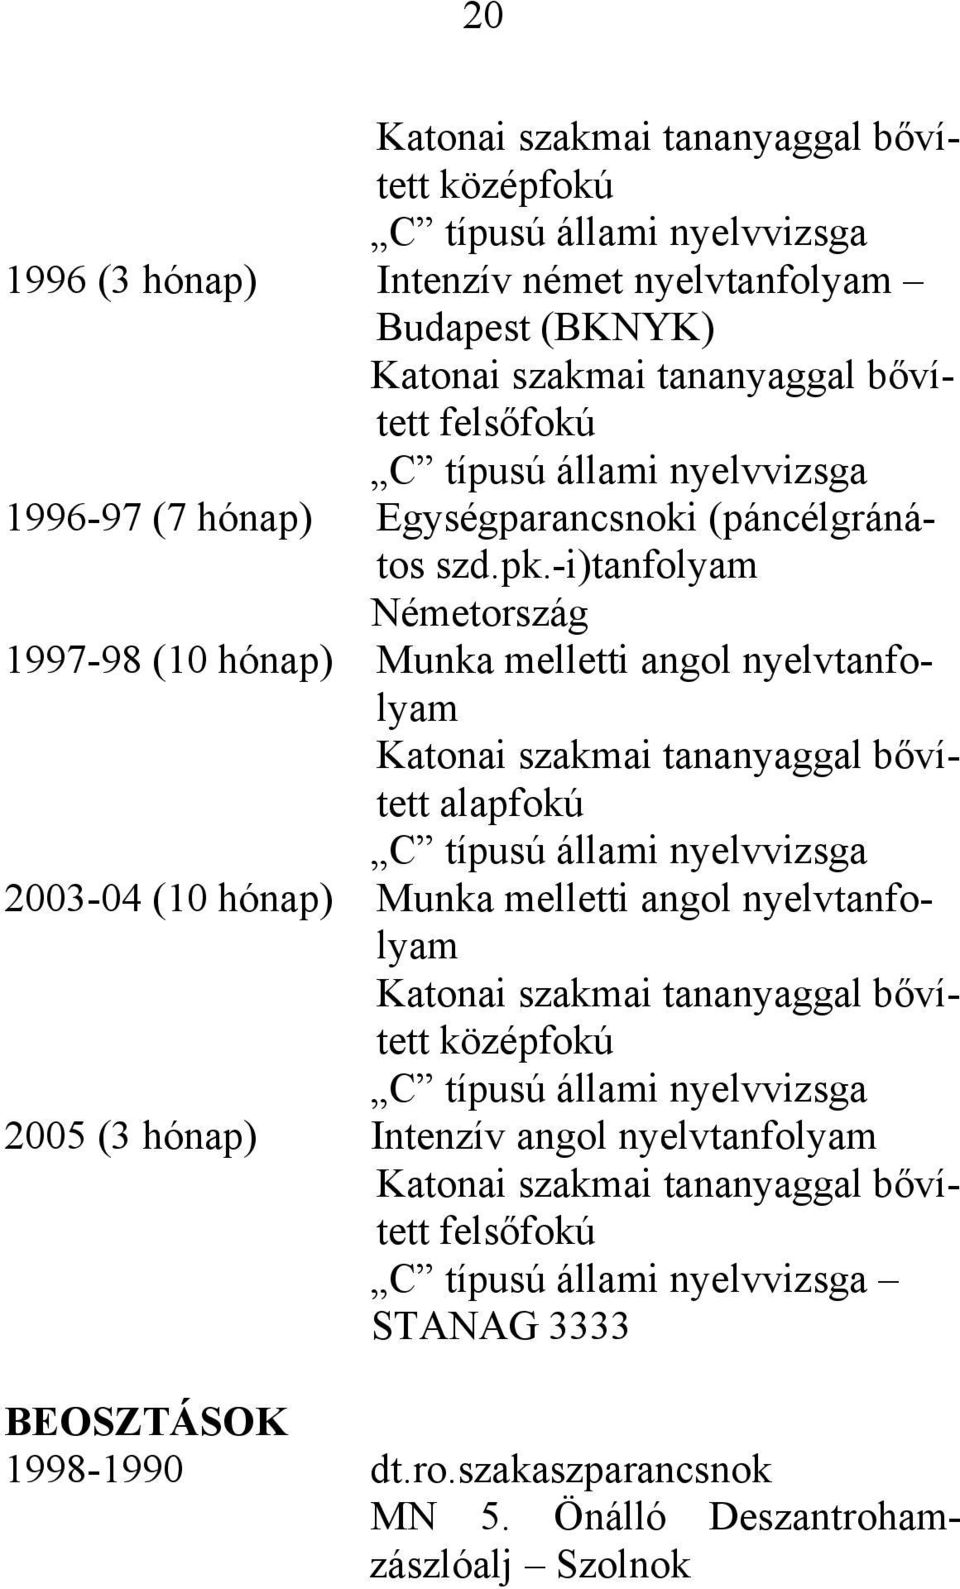 -i)tanfolyam Németország 1997-98 (10 hónap) Munka melletti angol nyelvtanfolyam Katonai szakmai tananyaggal bővített alapfokú C típusú állami nyelvvizsga 2003-04 (10 hónap) Munka melletti angol